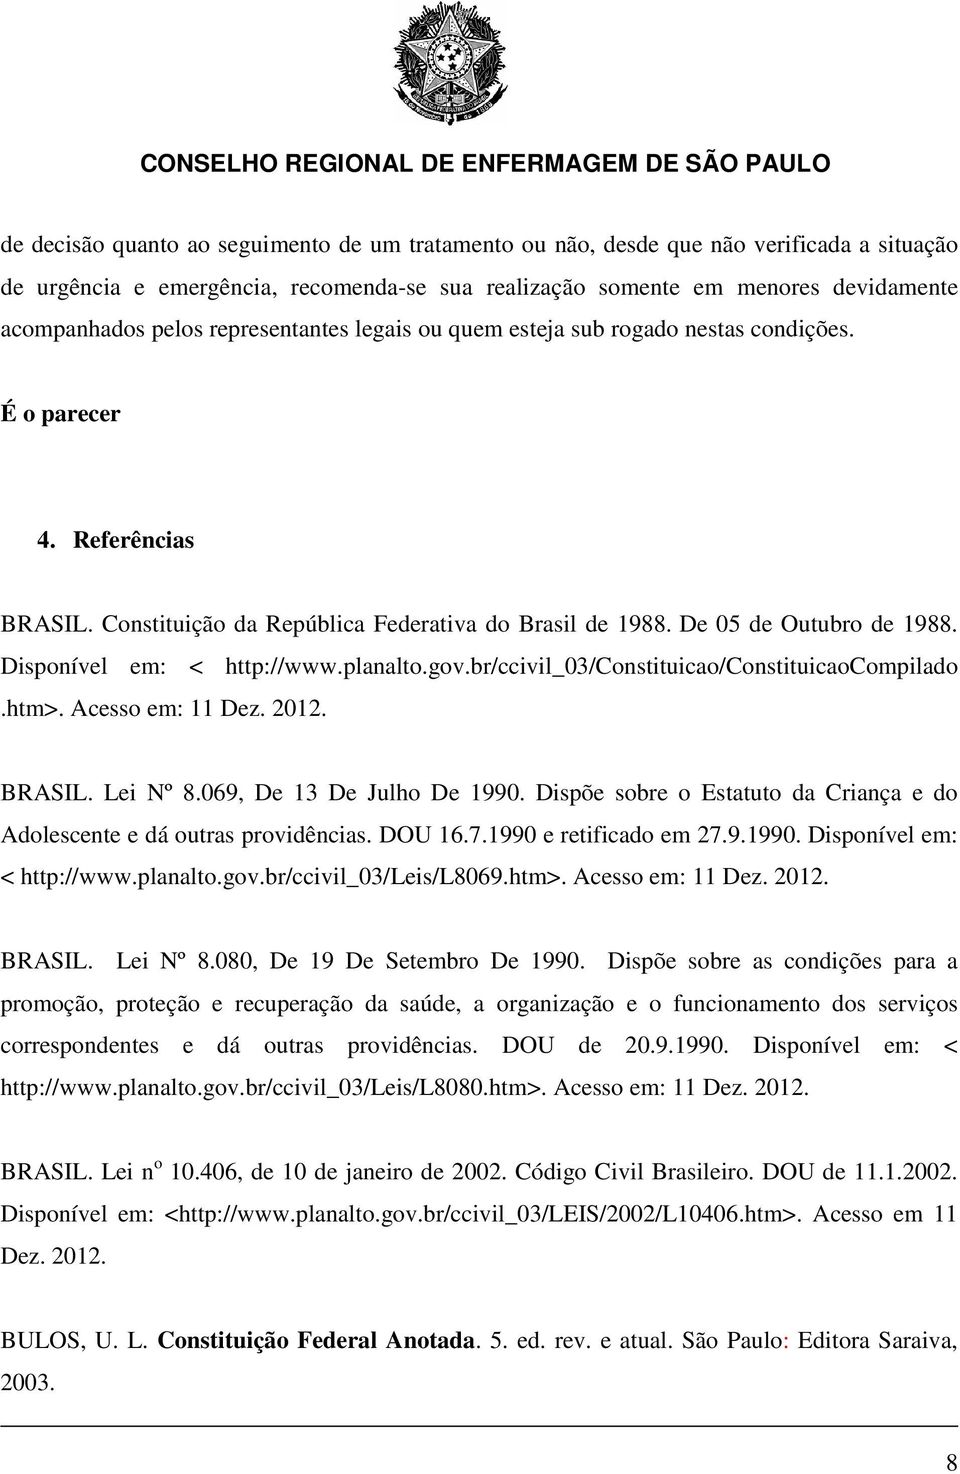 Disponível em: < http://www.planalto.gov.br/ccivil_03/constituicao/constituicaocompilado.htm>. Acesso em: 11 Dez. 2012. BRASIL. Lei Nº 8.069, De 13 De Julho De 1990.